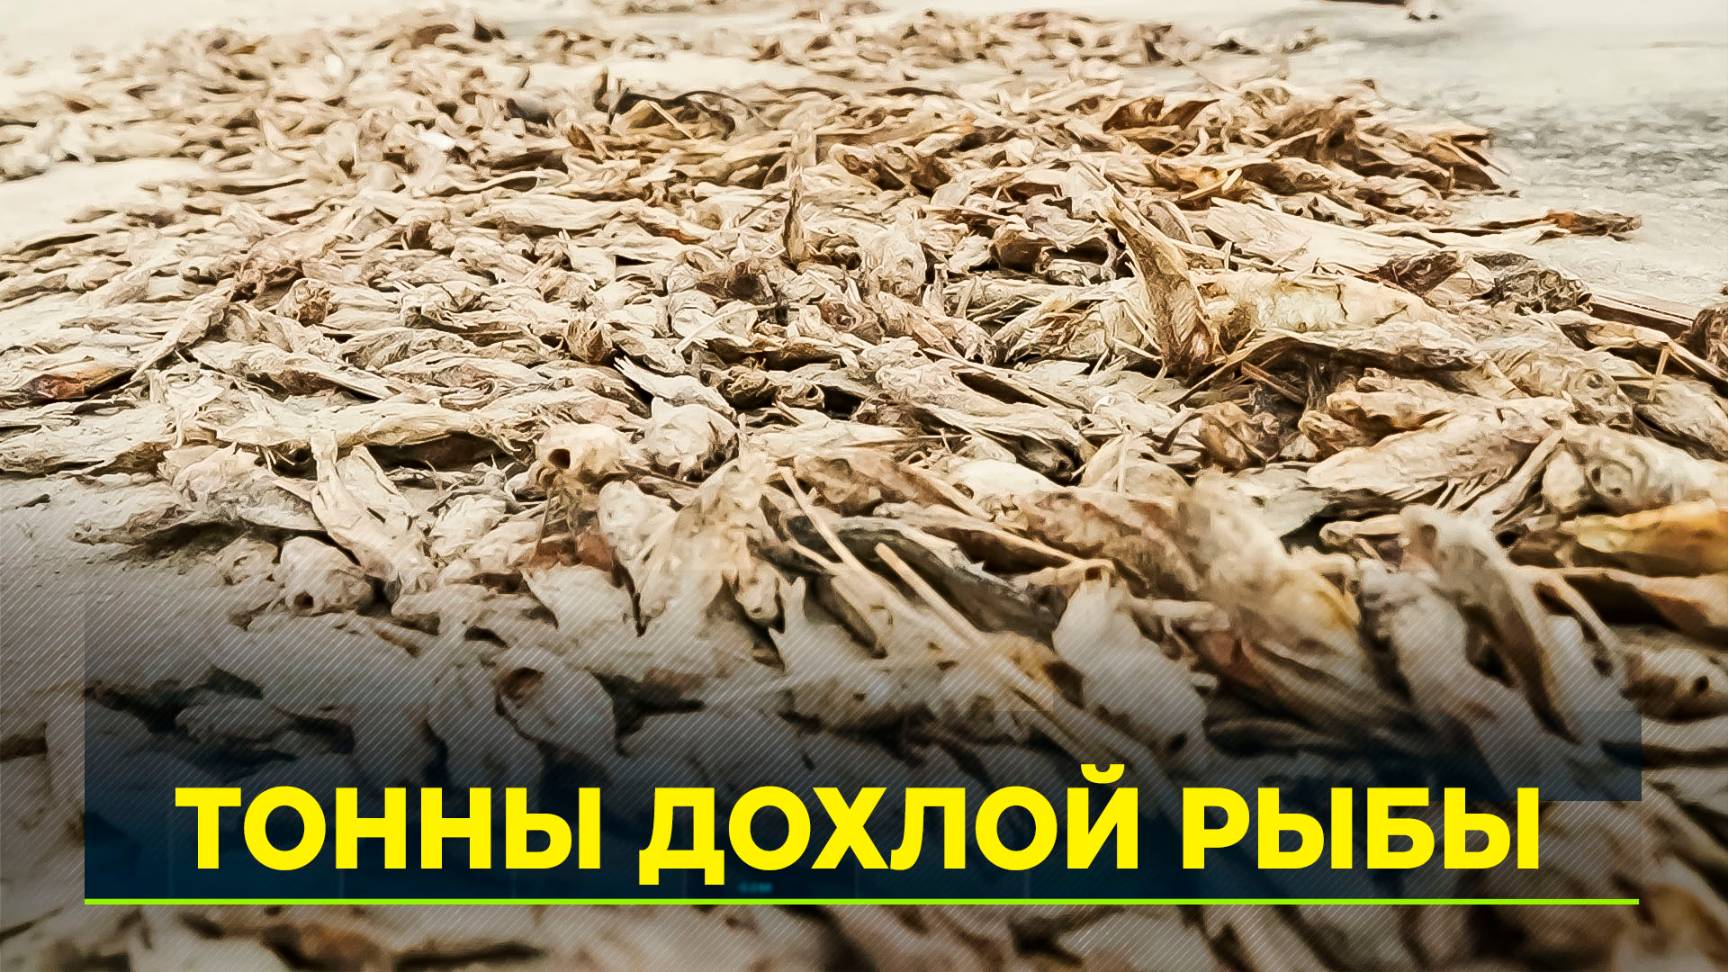 Учёные назвали причину массовой гибели рыбы на берегу Обской губы